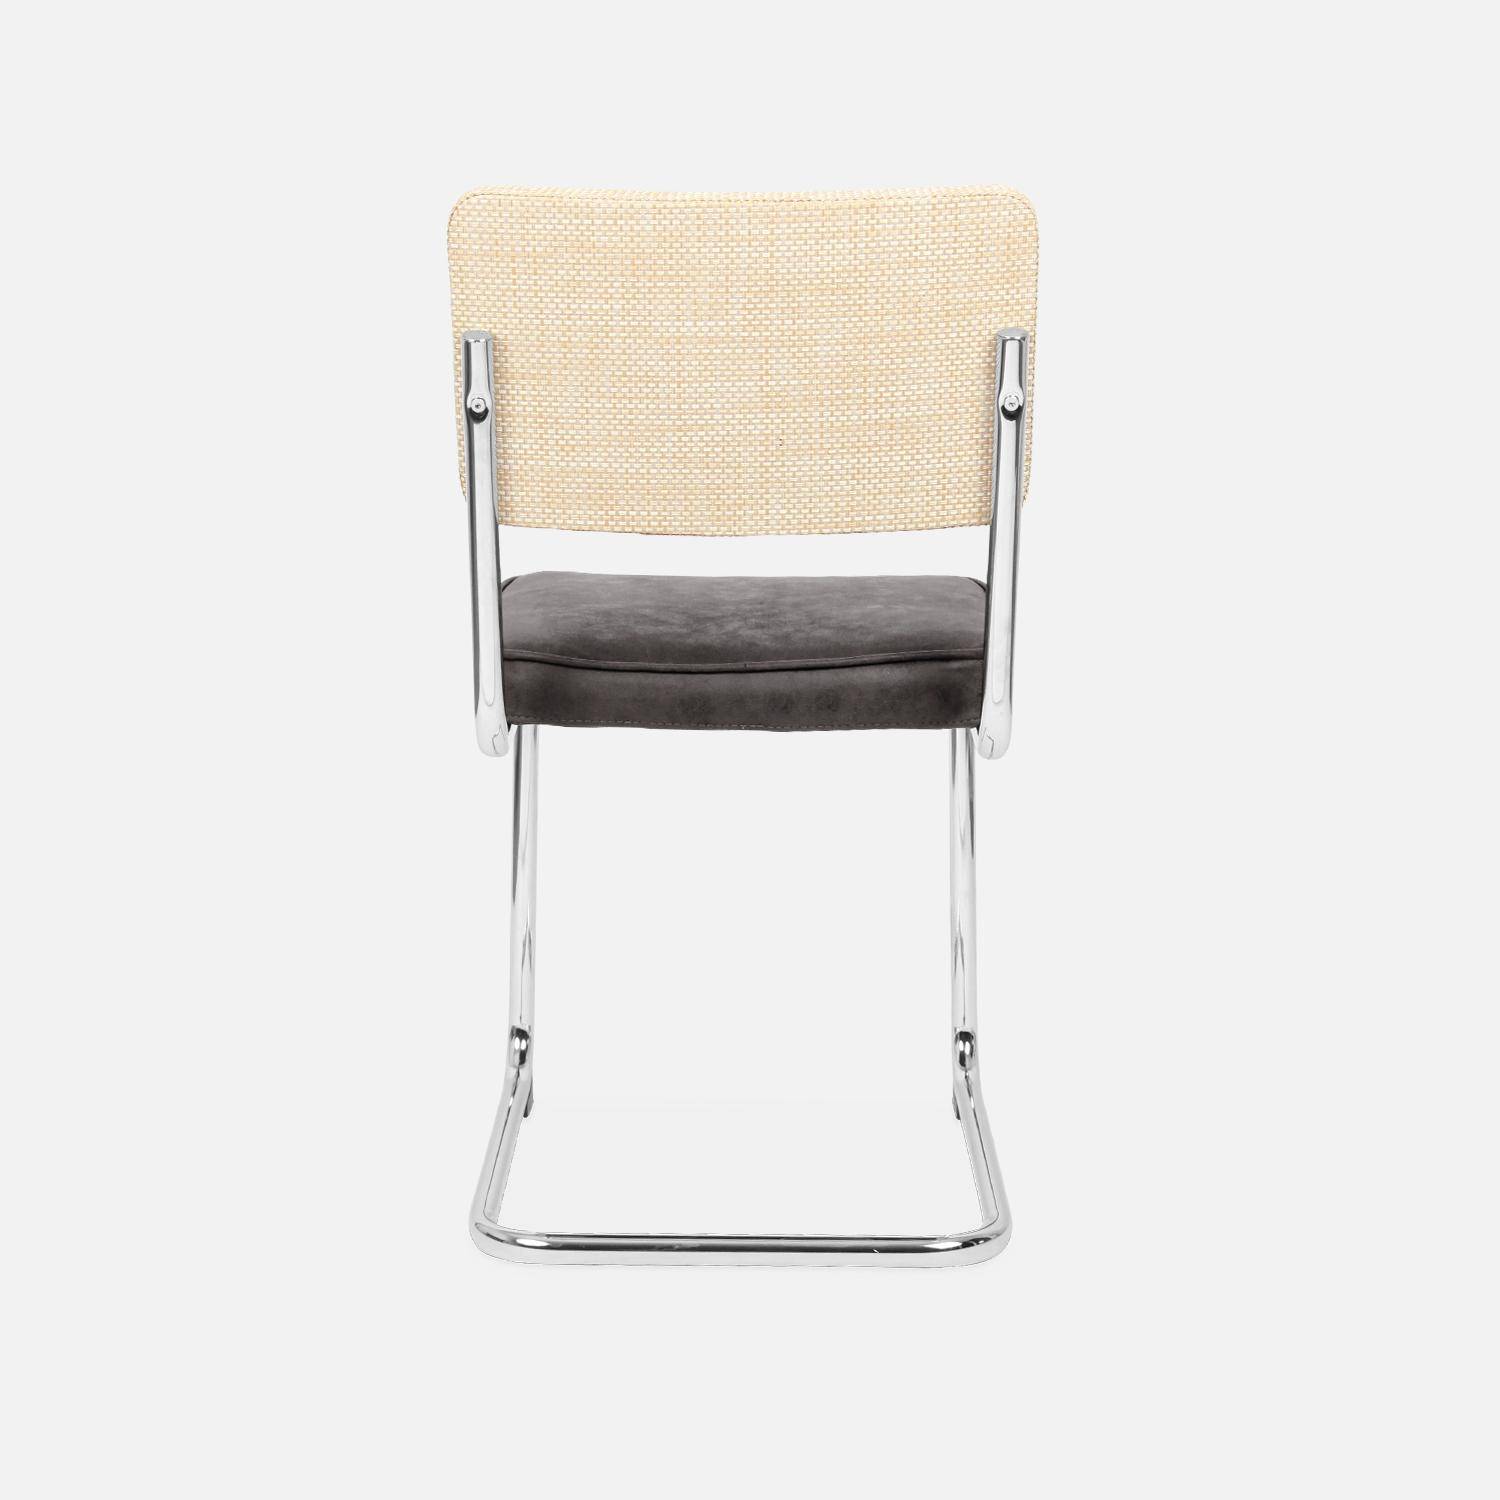 2 cadeiras cantilever - Maja - tecido preto e resina com efeito rattan, 46 x 54,5 x 84,5cm Photo7